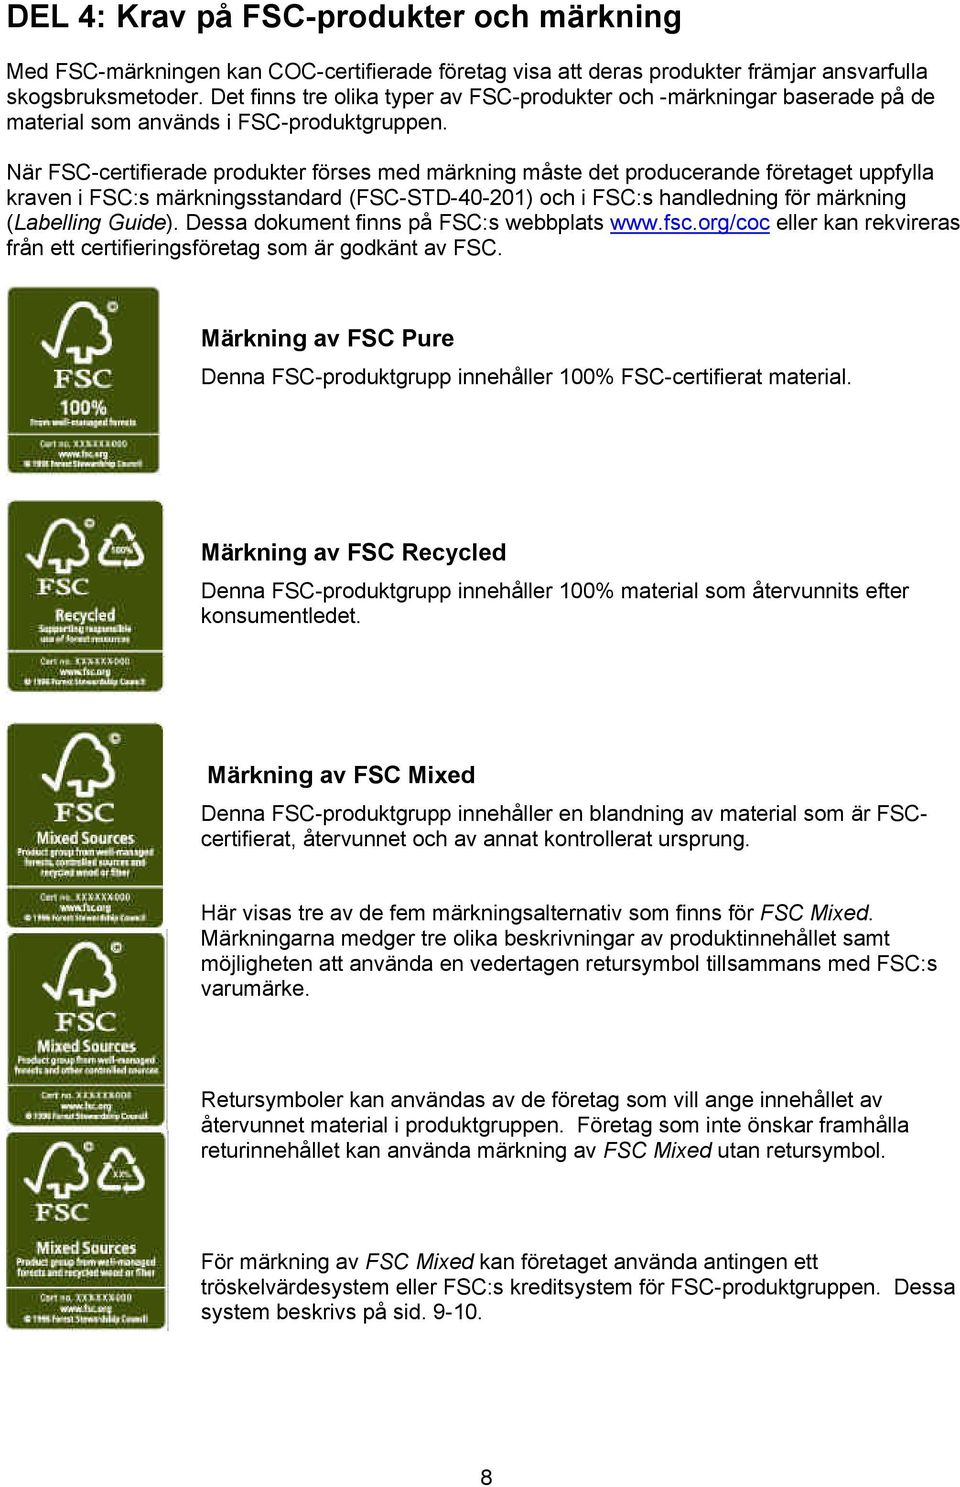 När FSC-certifierade produkter förses med märkning måste det producerande företaget uppfylla kraven i FSC:s märkningsstandard (FSC-STD-40-201) och i FSC:s handledning för märkning (Labelling Guide).